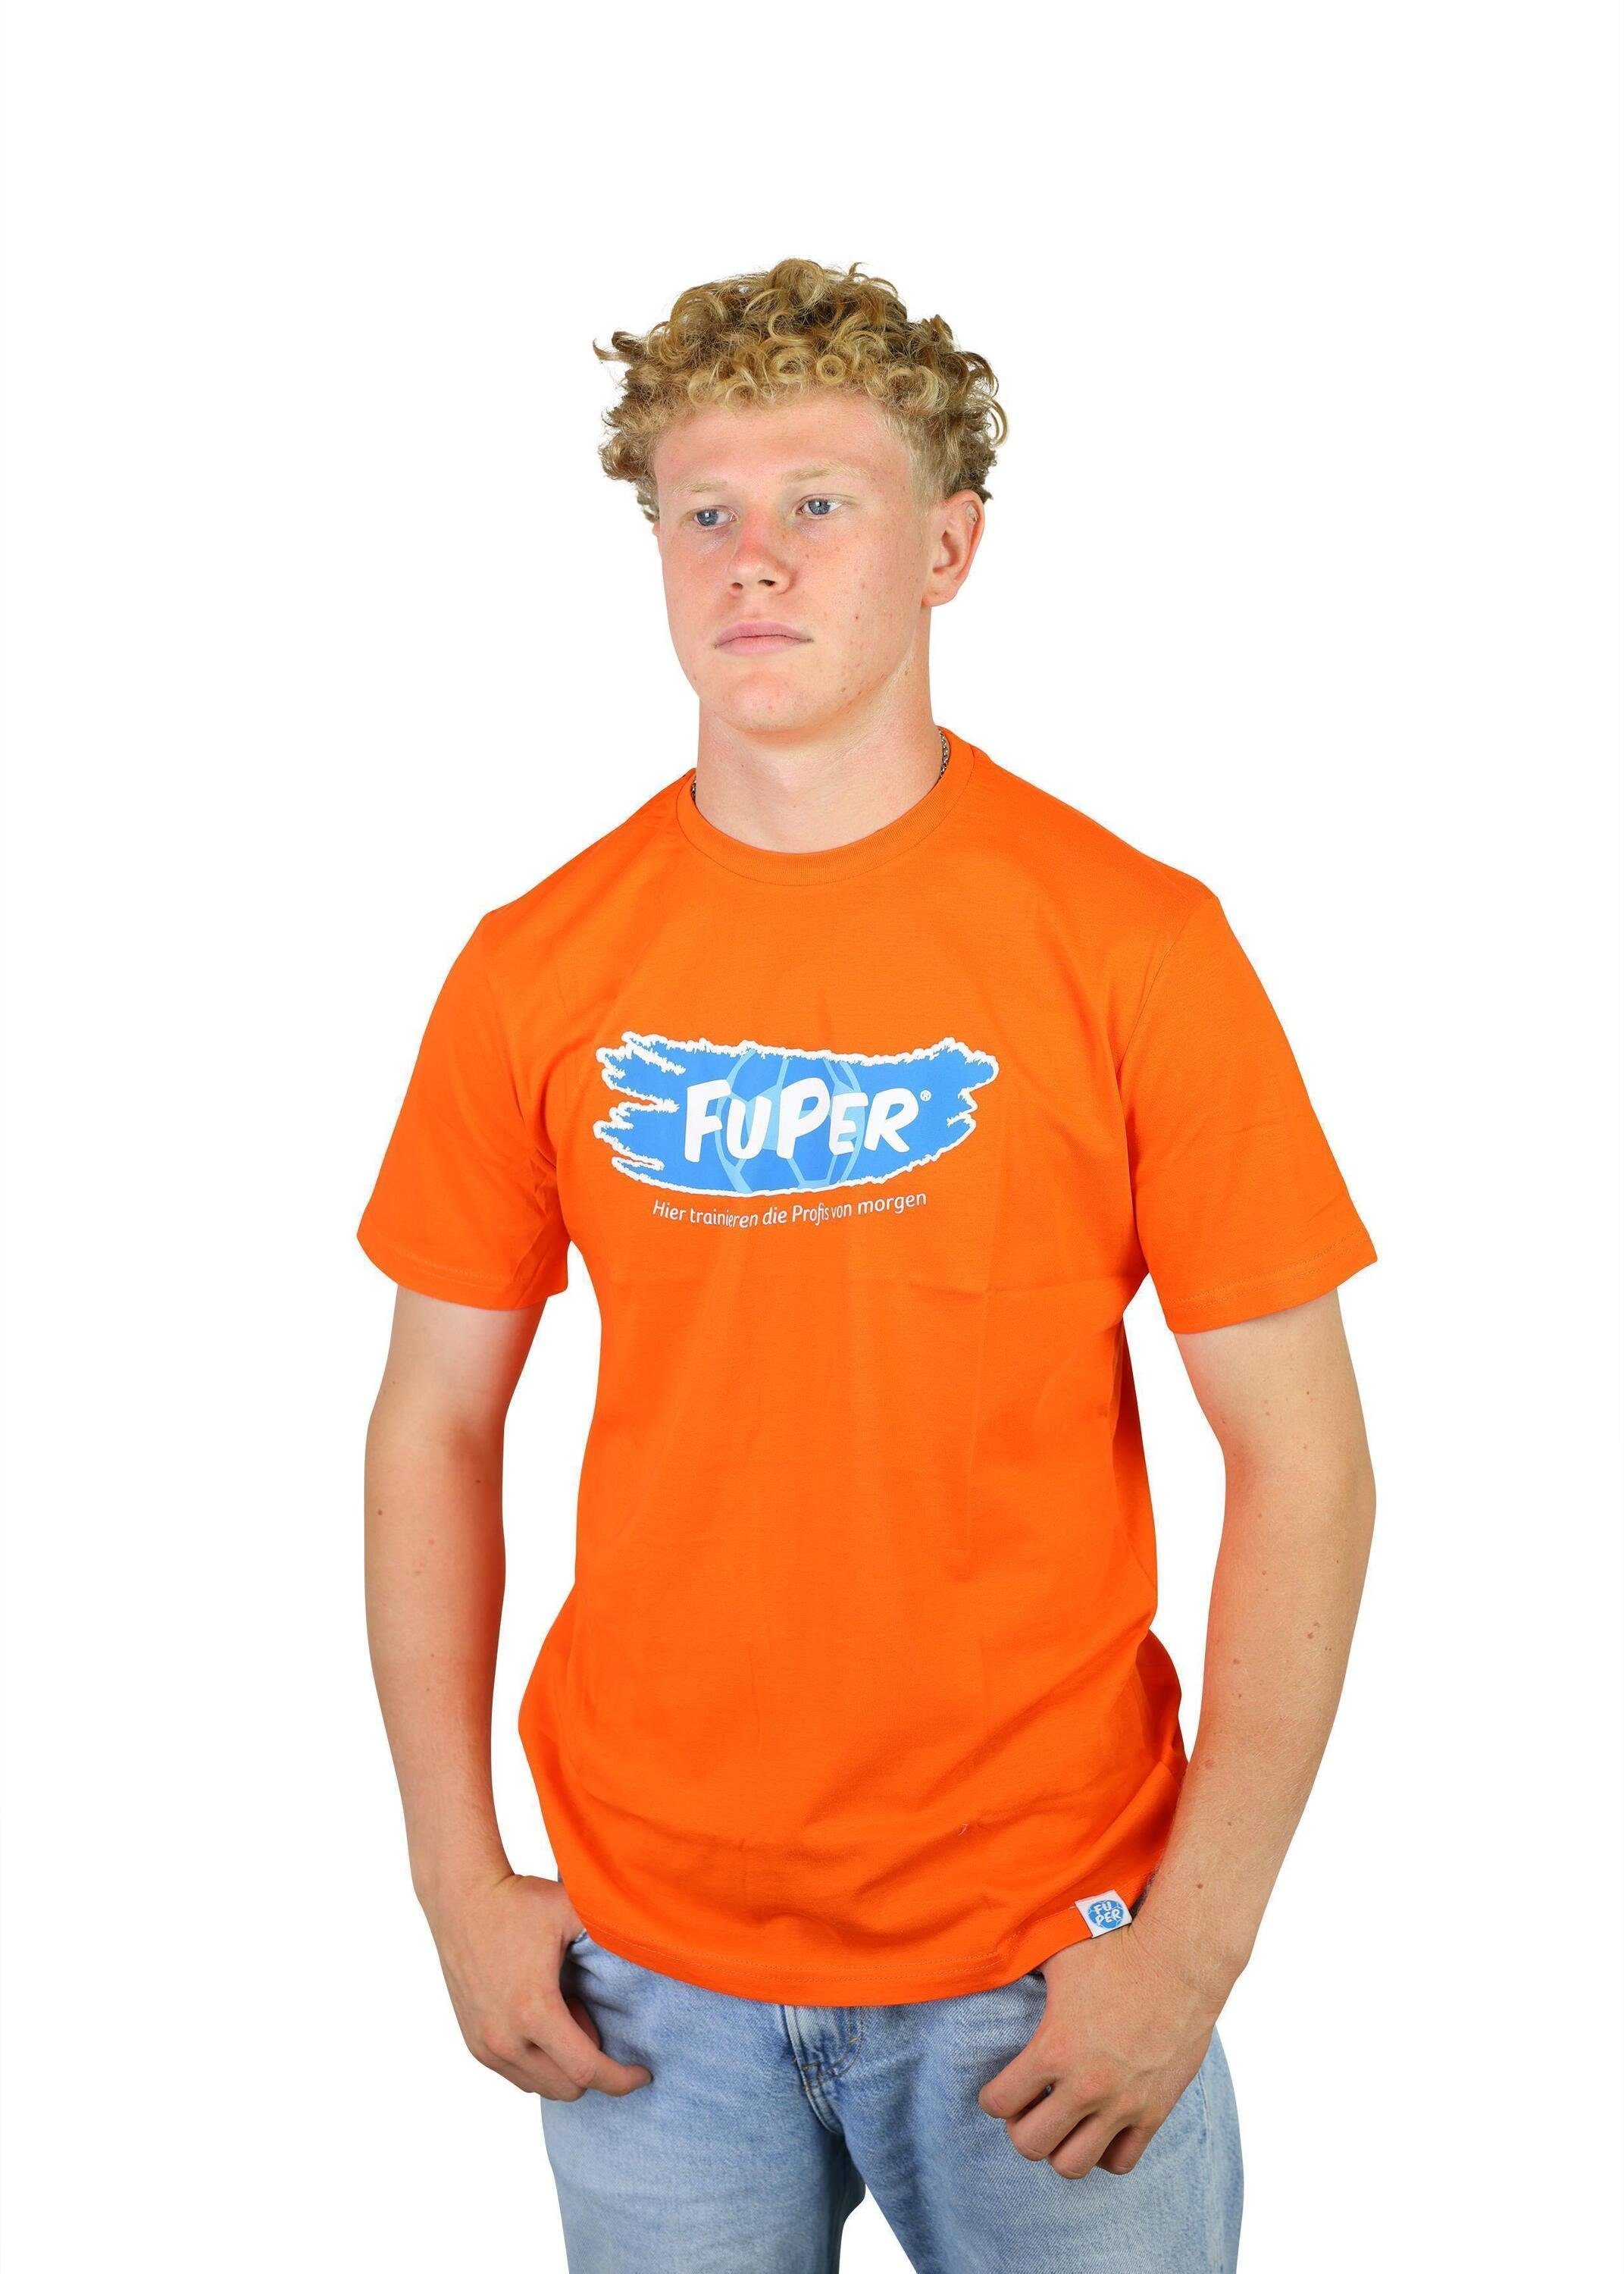 T-Shirt aus FuPer für Kinder, Orange Baumwolle, Fußball, Tarik Jugend